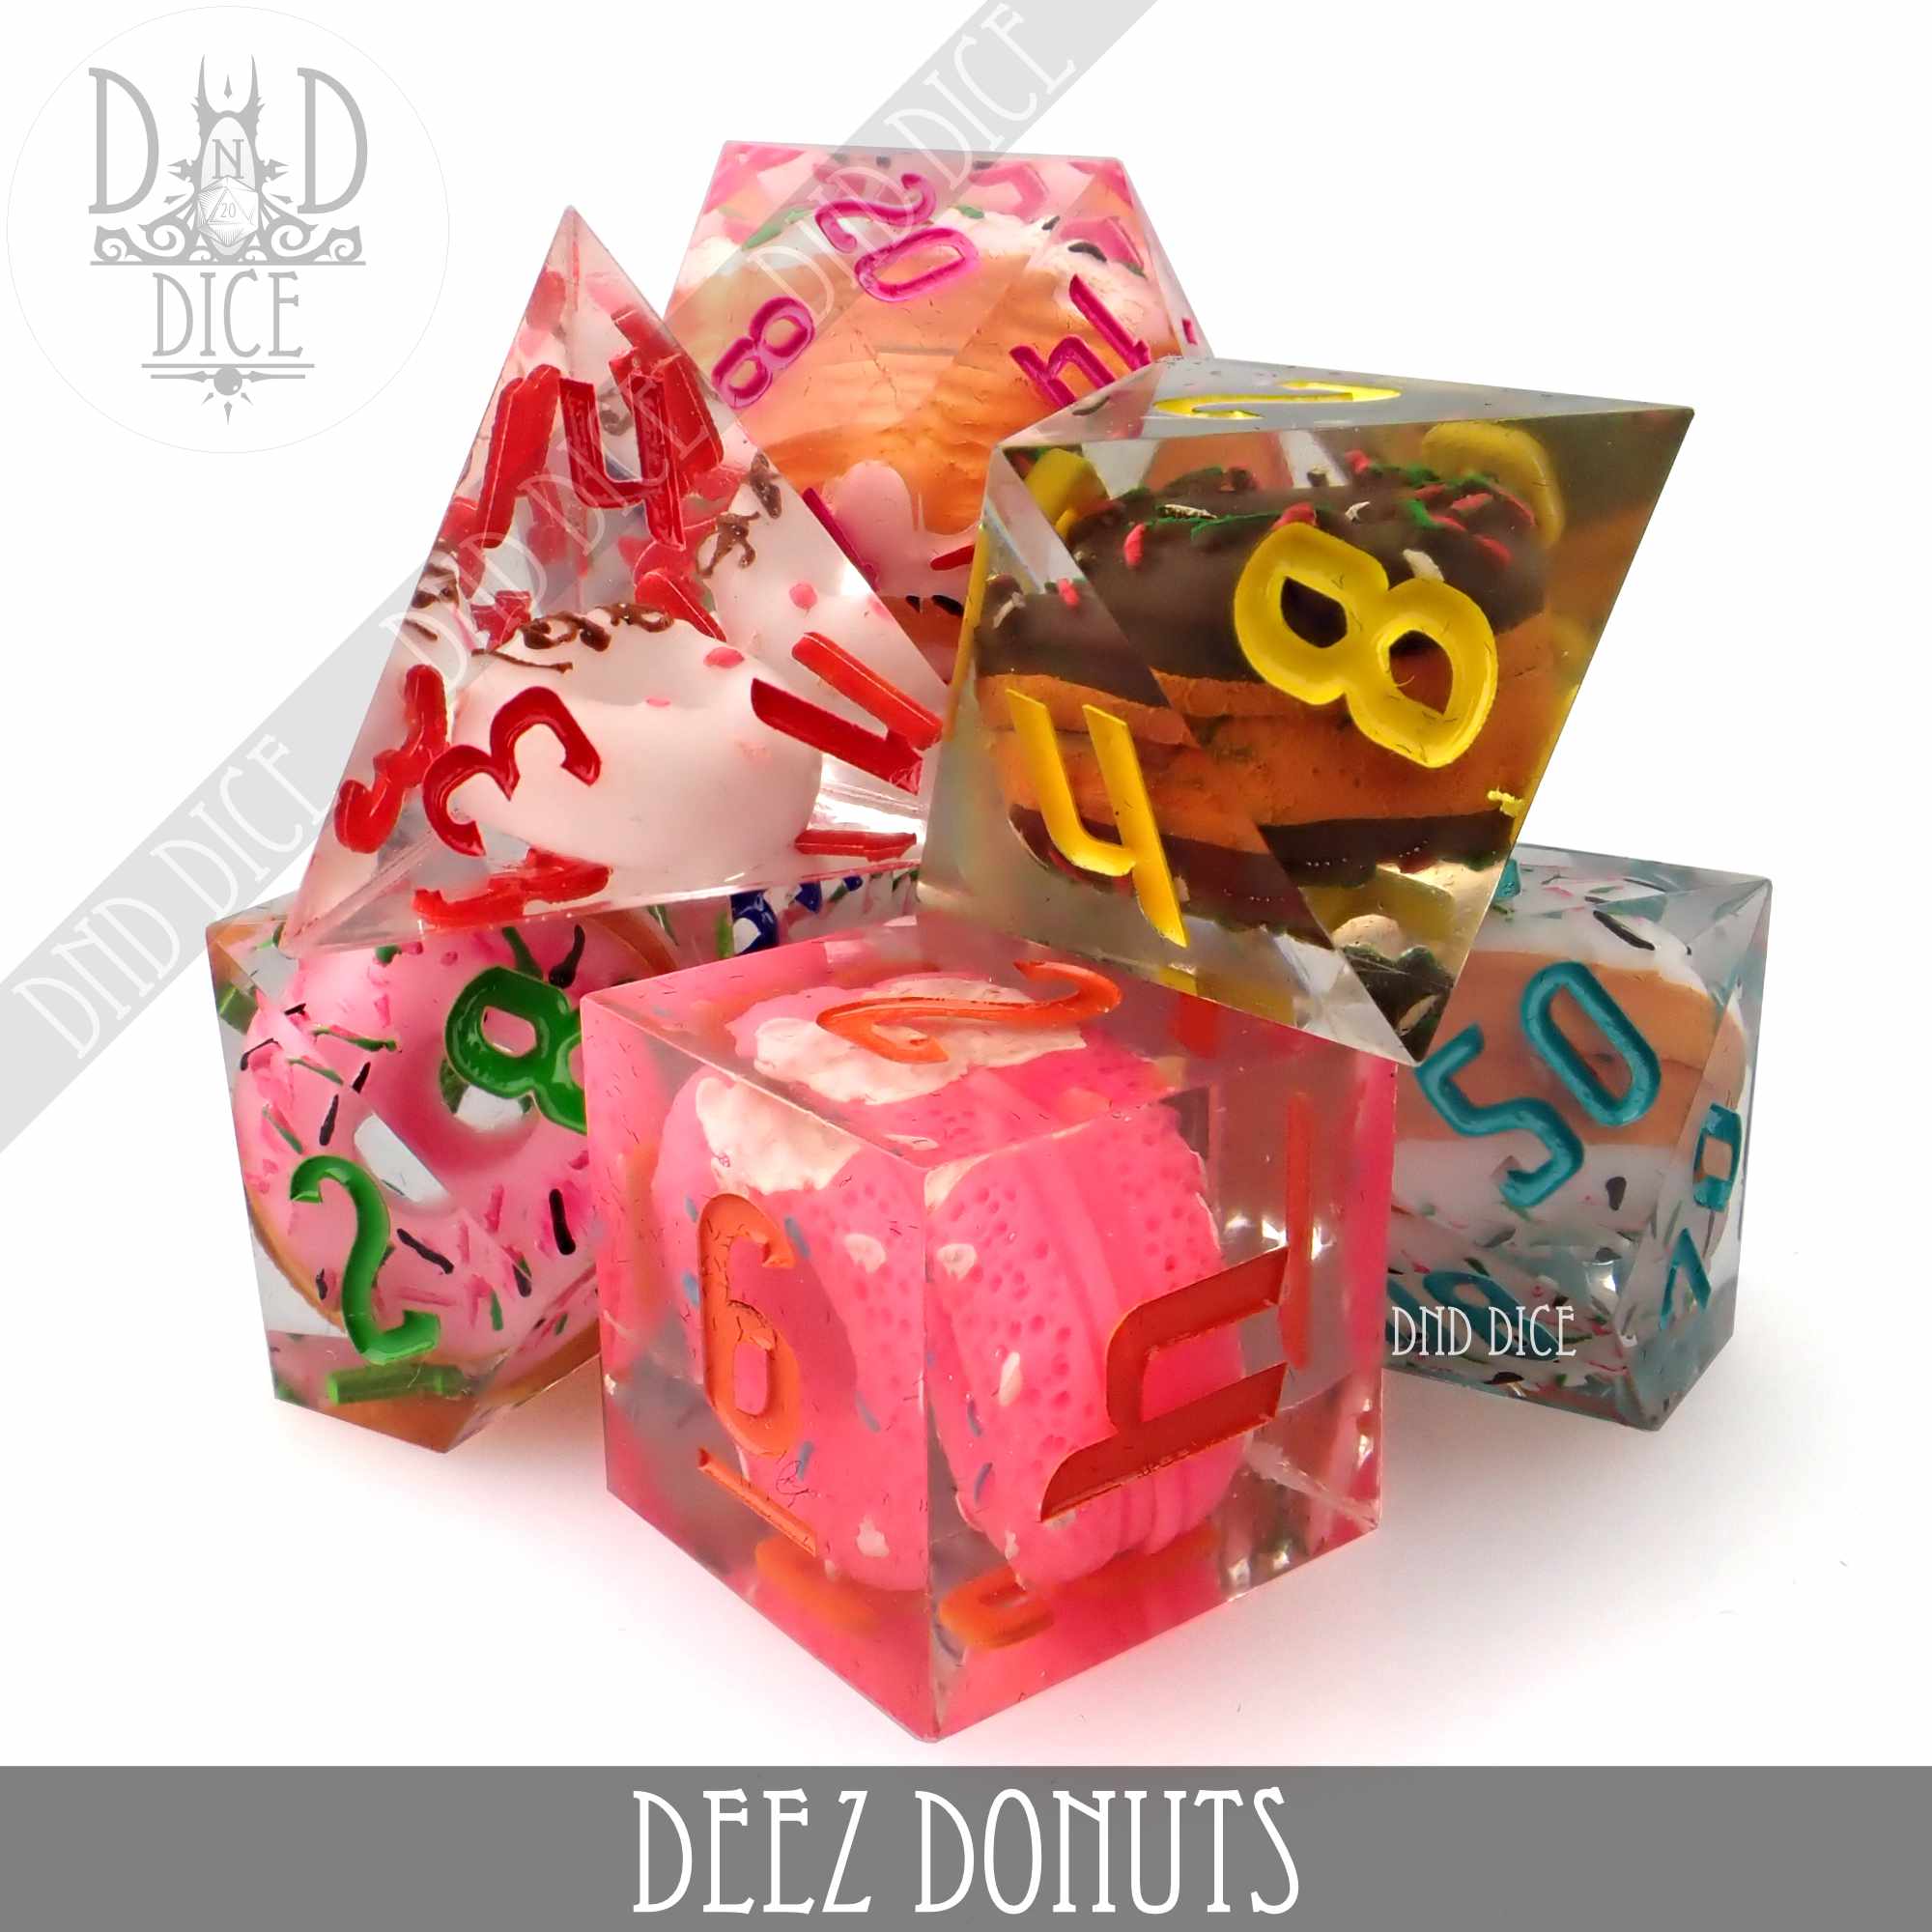 Deez Donuts Handmade